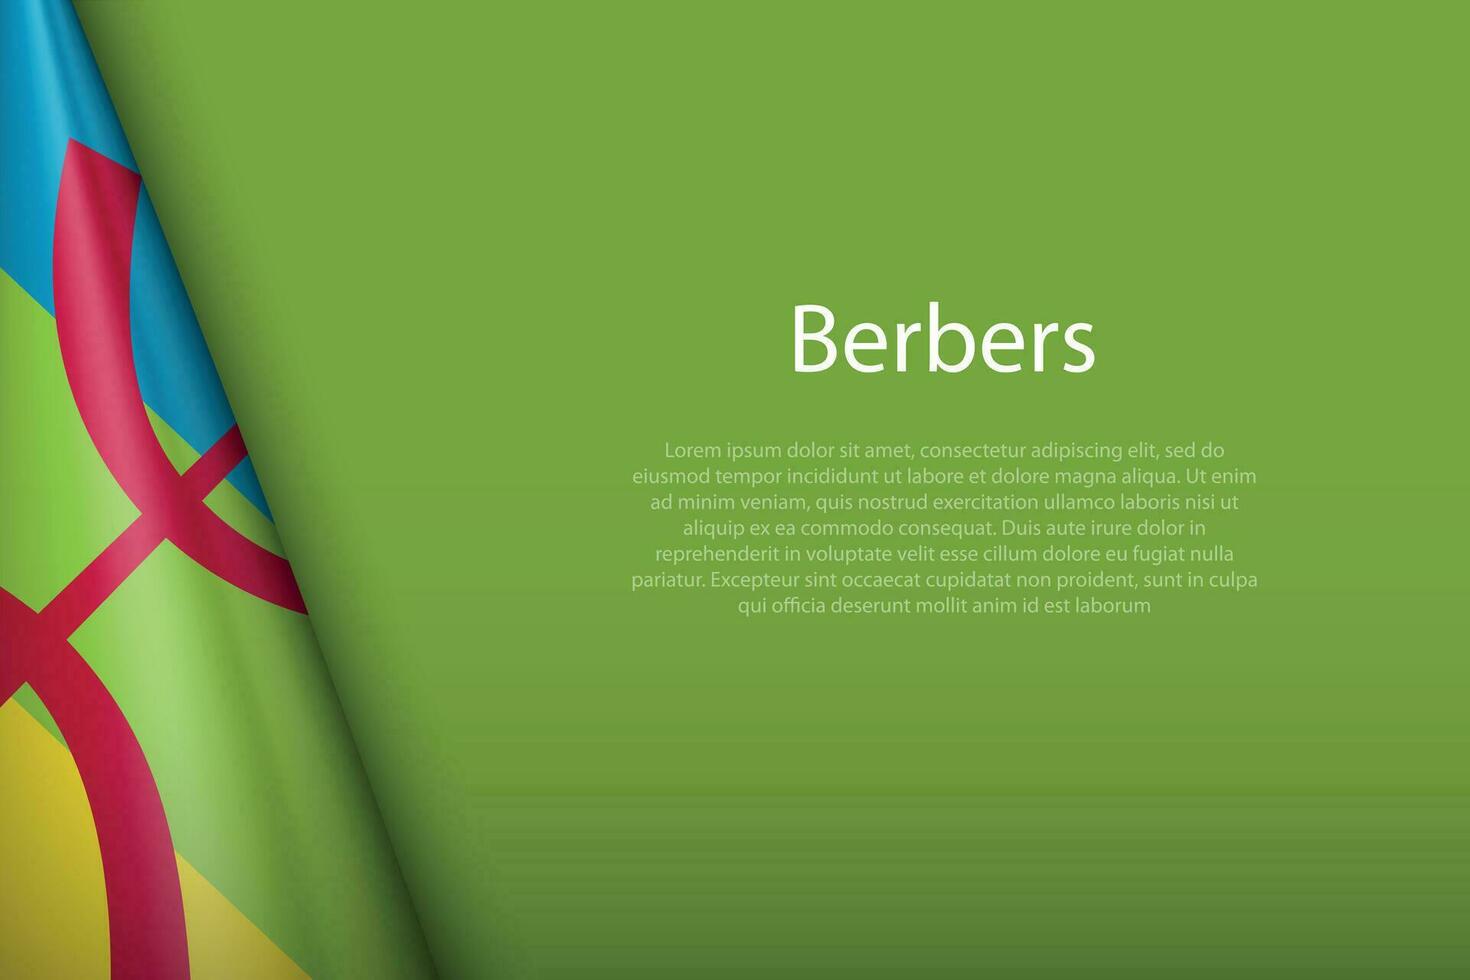 bandeira do berberes, étnico grupo, isolado em fundo com copyspace vetor